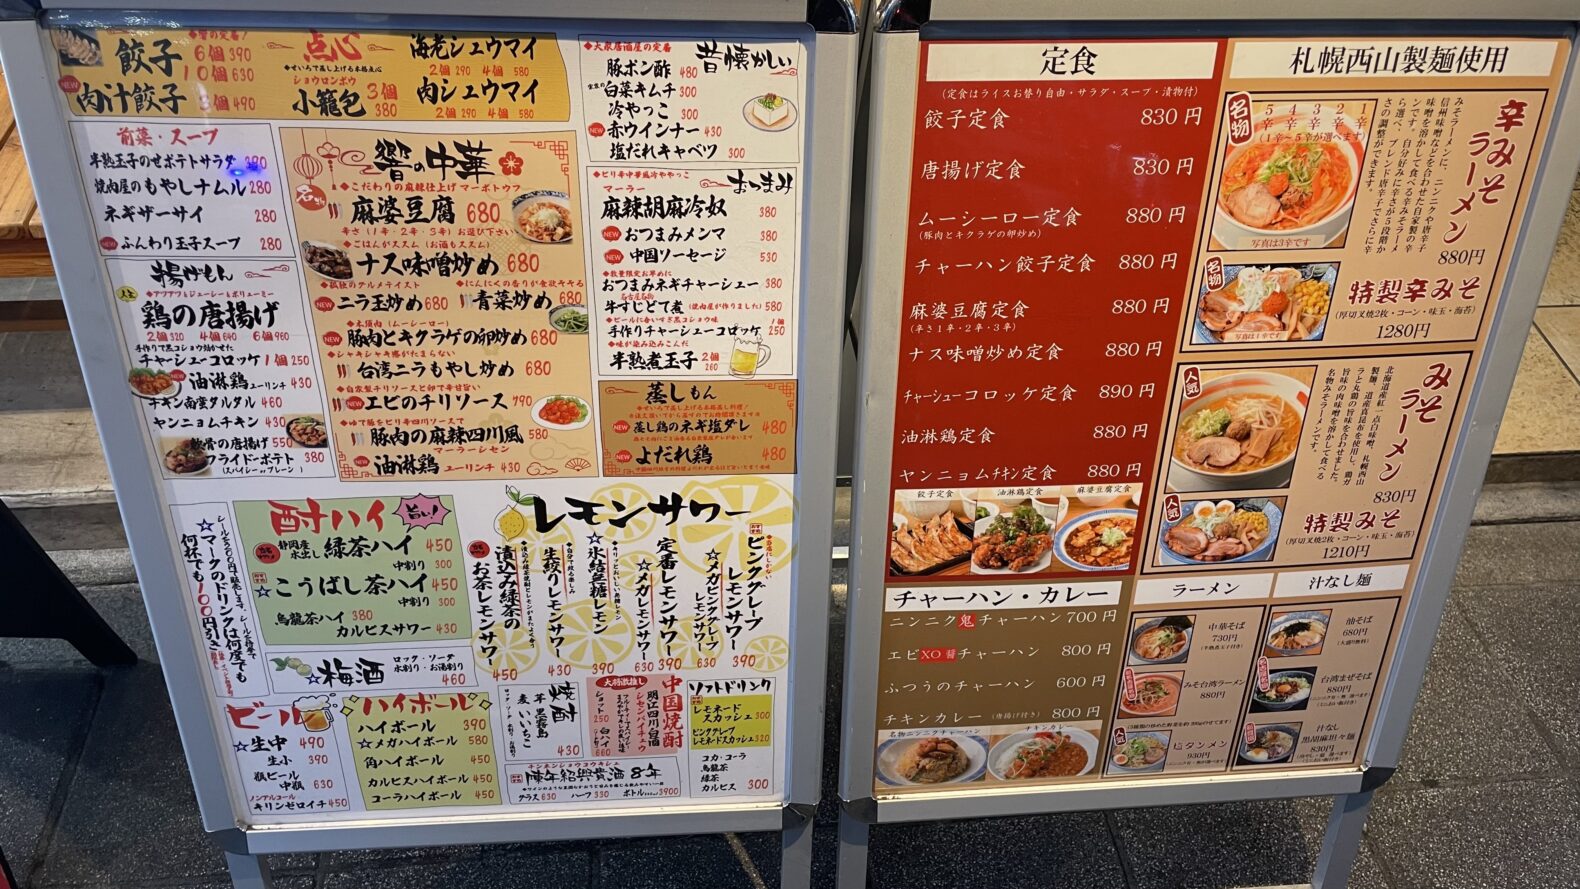 中華料理店のメニュー表